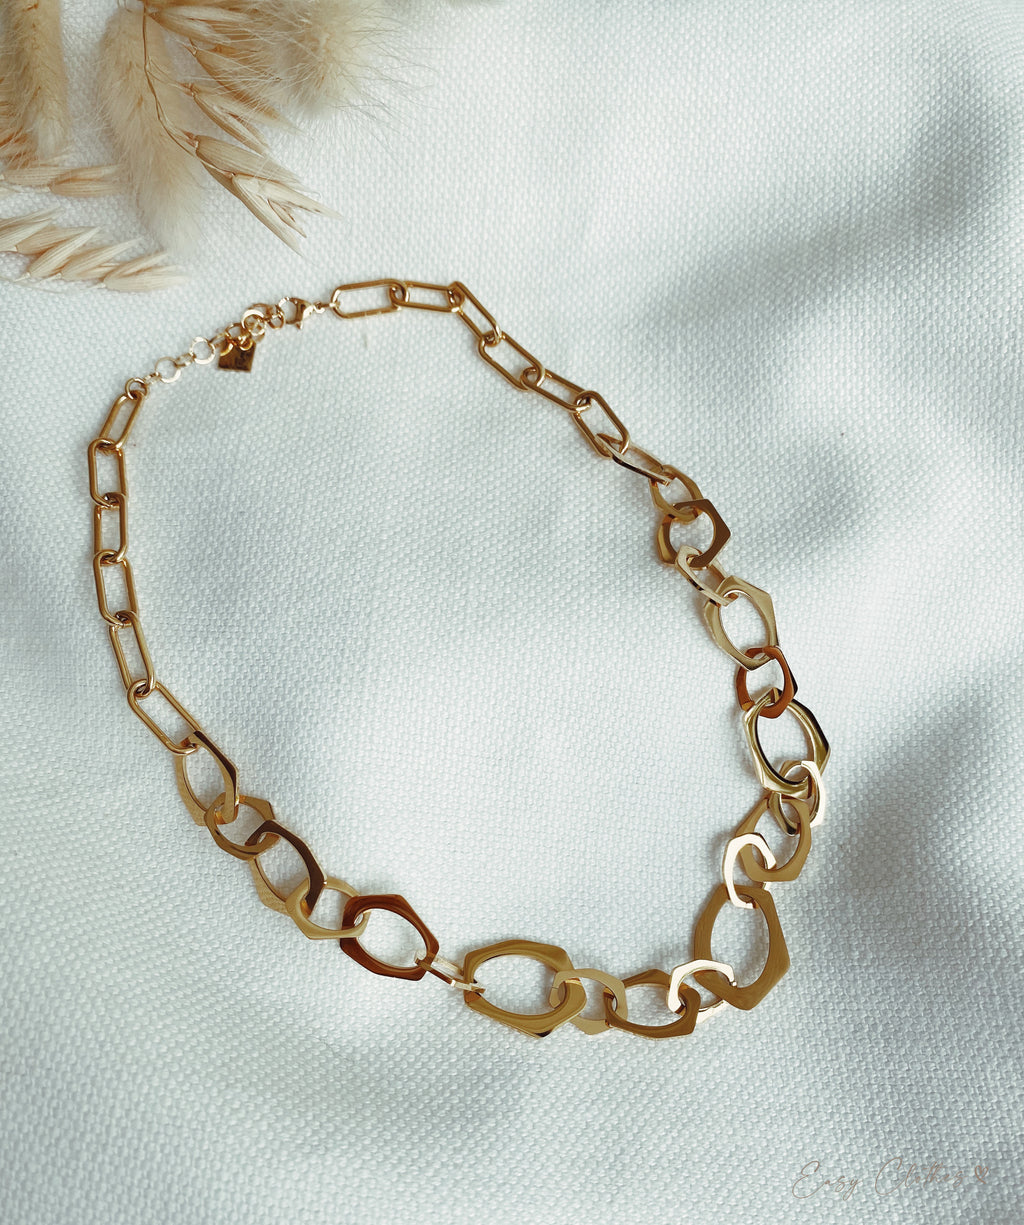 Elanou necklace - Golden